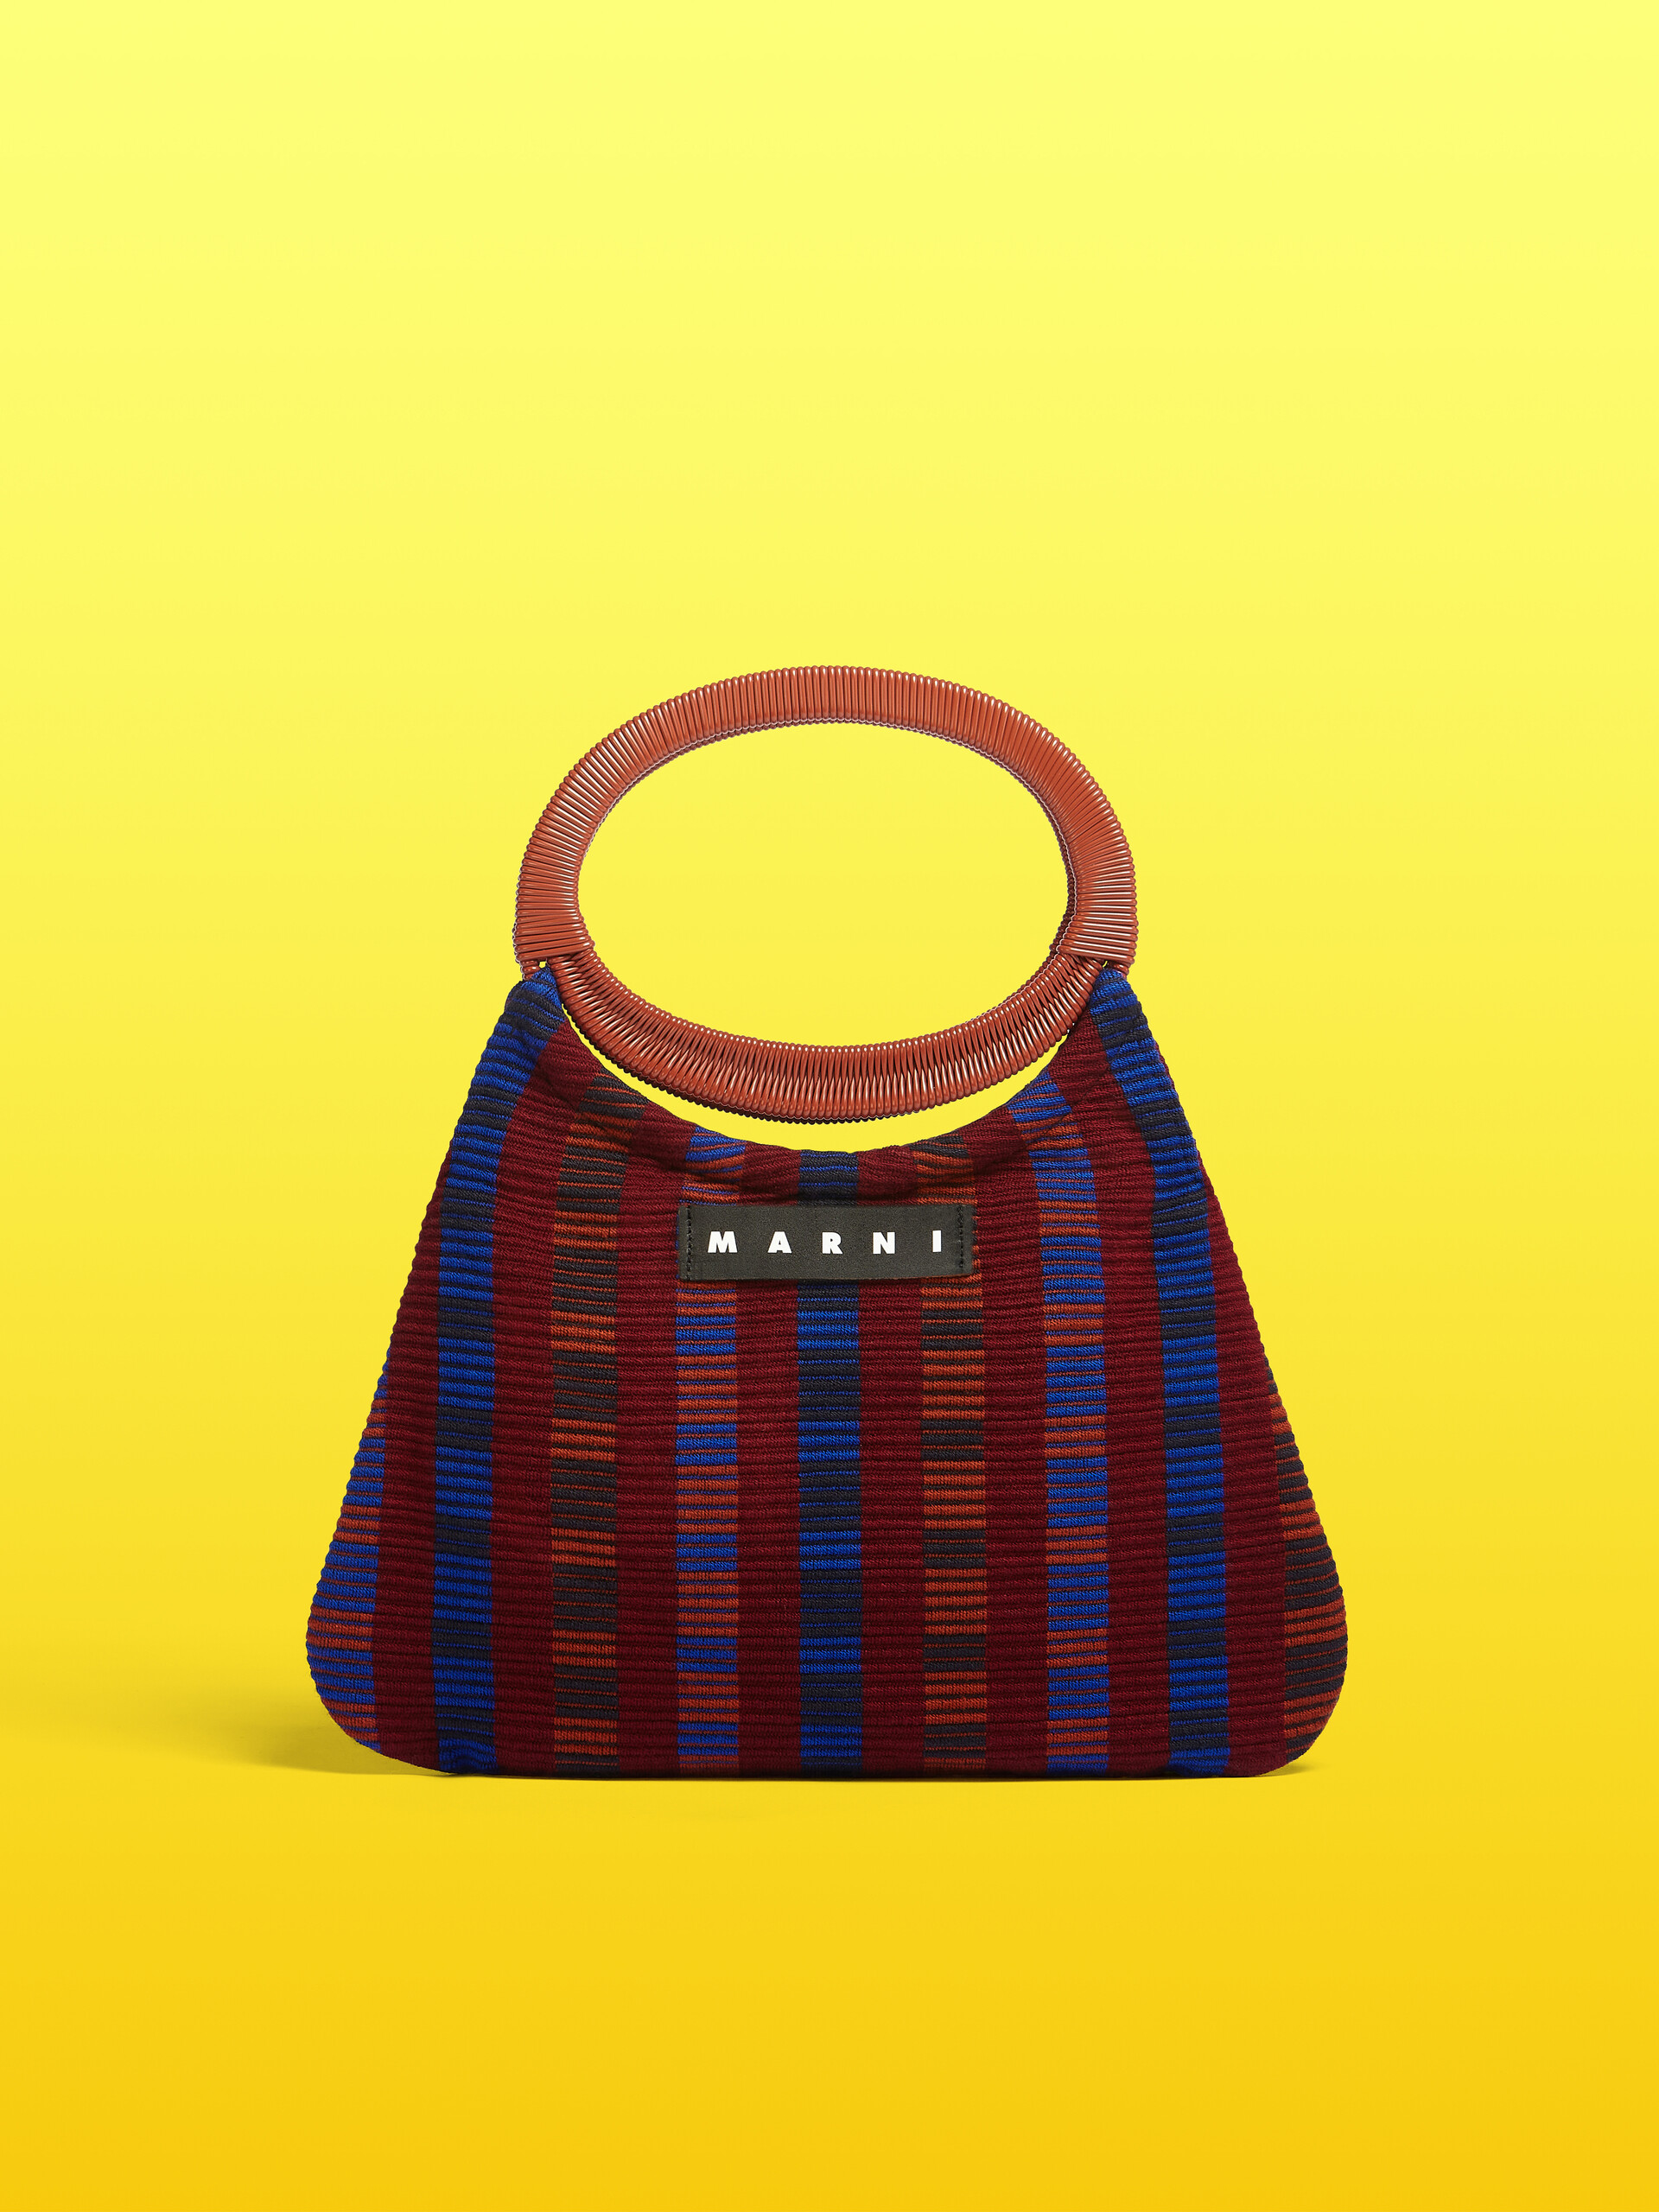 MARNI MARKET BOAT bag in multicolor red striped cotton - Furniture - Image 1